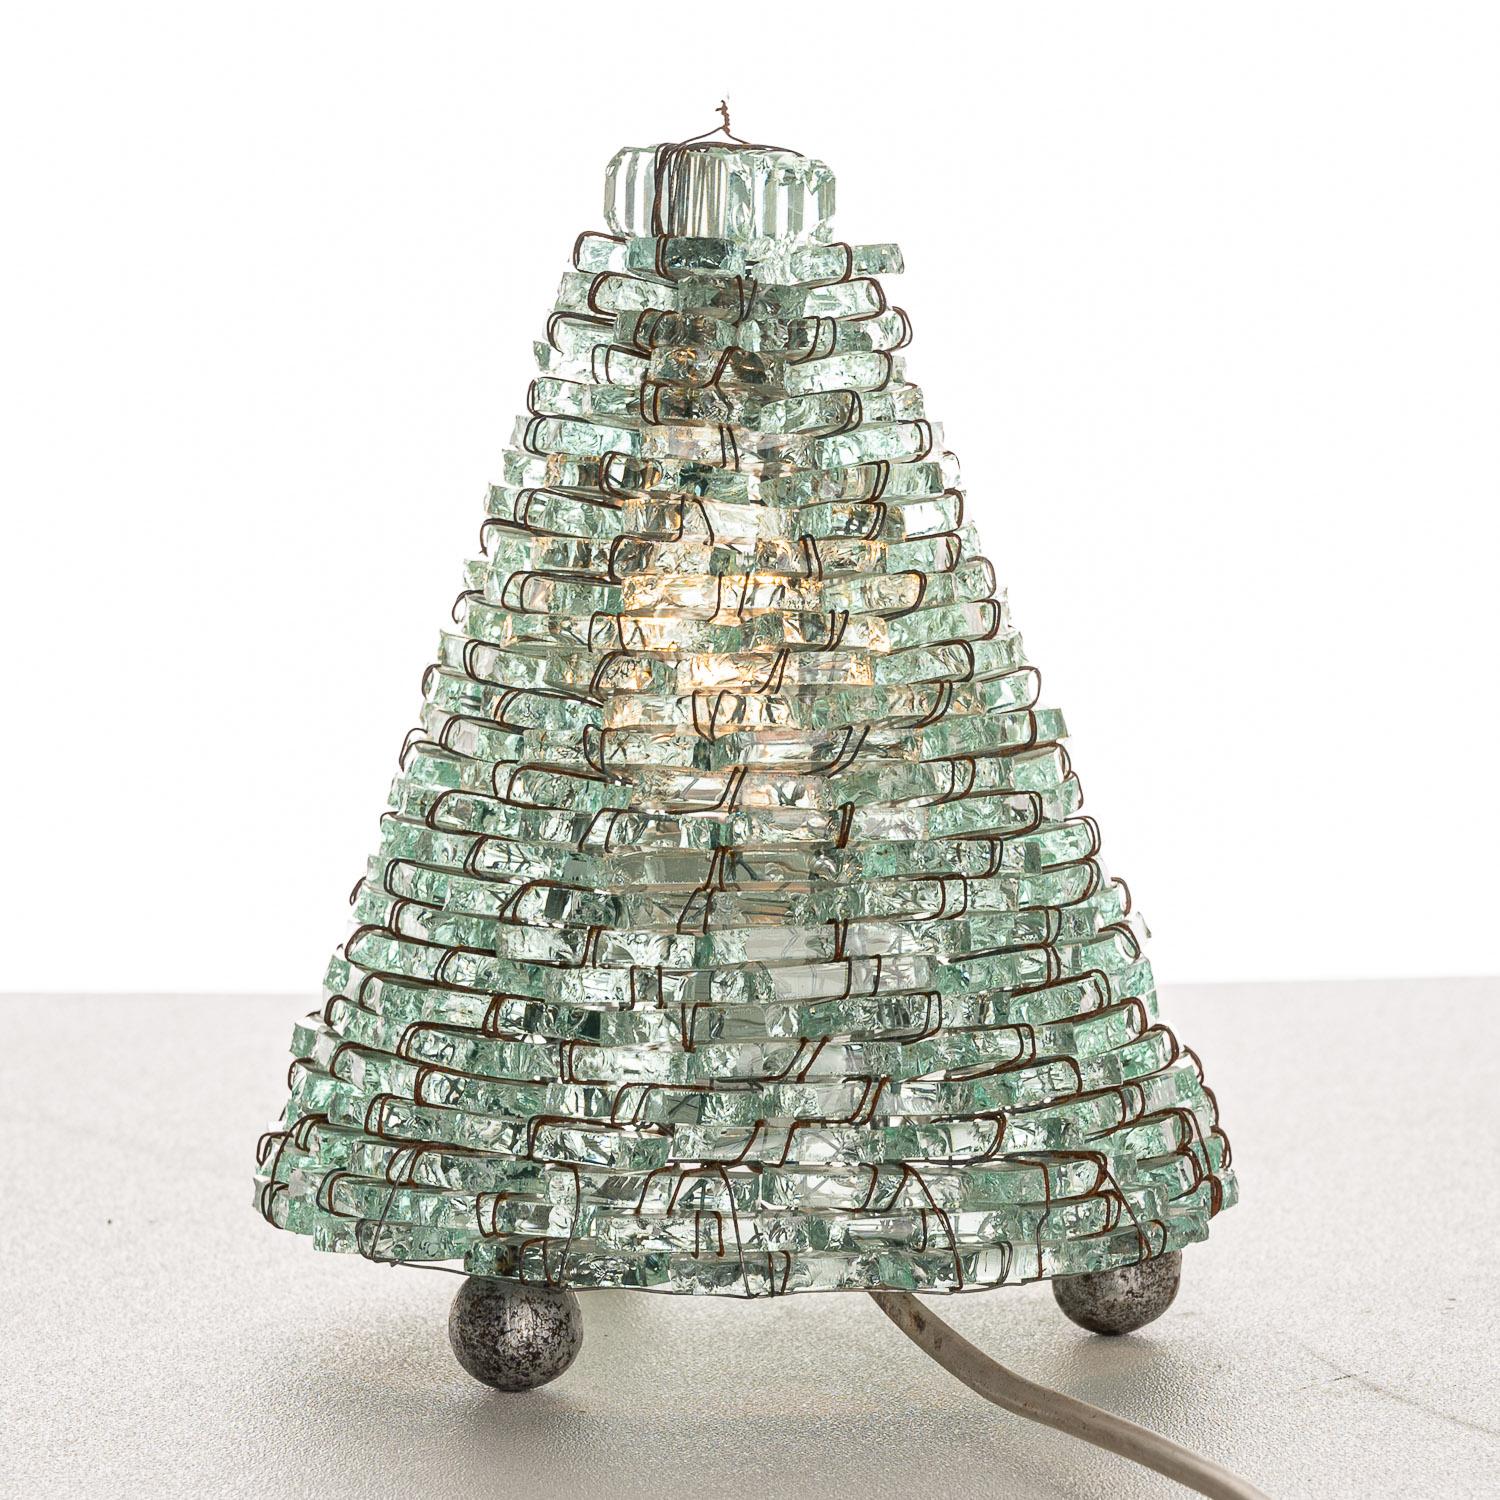 Hunderte von Glasstücken, die gestapelt und verdrahtet werden, um eine kegelförmige Tischlampe zu schaffen. Italienisches Design des 20. Jahrhunderts.